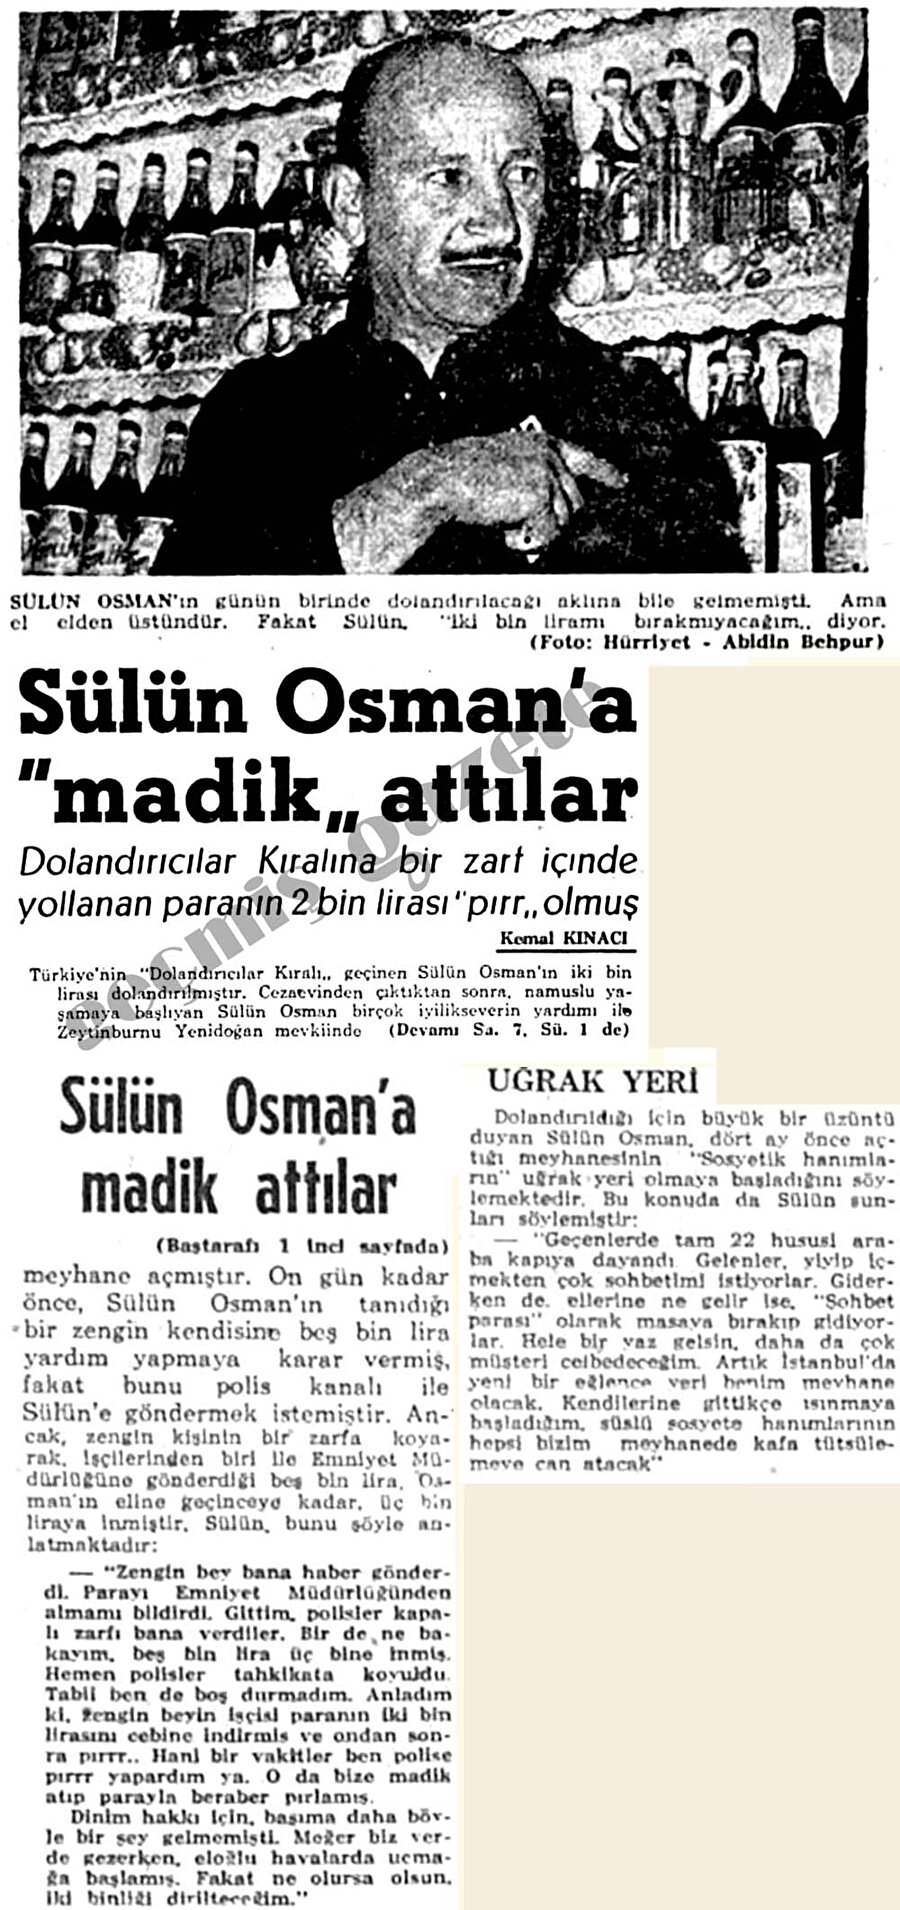 Yeşilçam yıldızlarına oyunculuk dersi veren Osman, 1984'te Beyoğlu'nda sürekli kaldığı bir otelde kalp krizinden ölmüş, kimlik taşımadığı için kimsesizler mezarlığına gömüldü.
